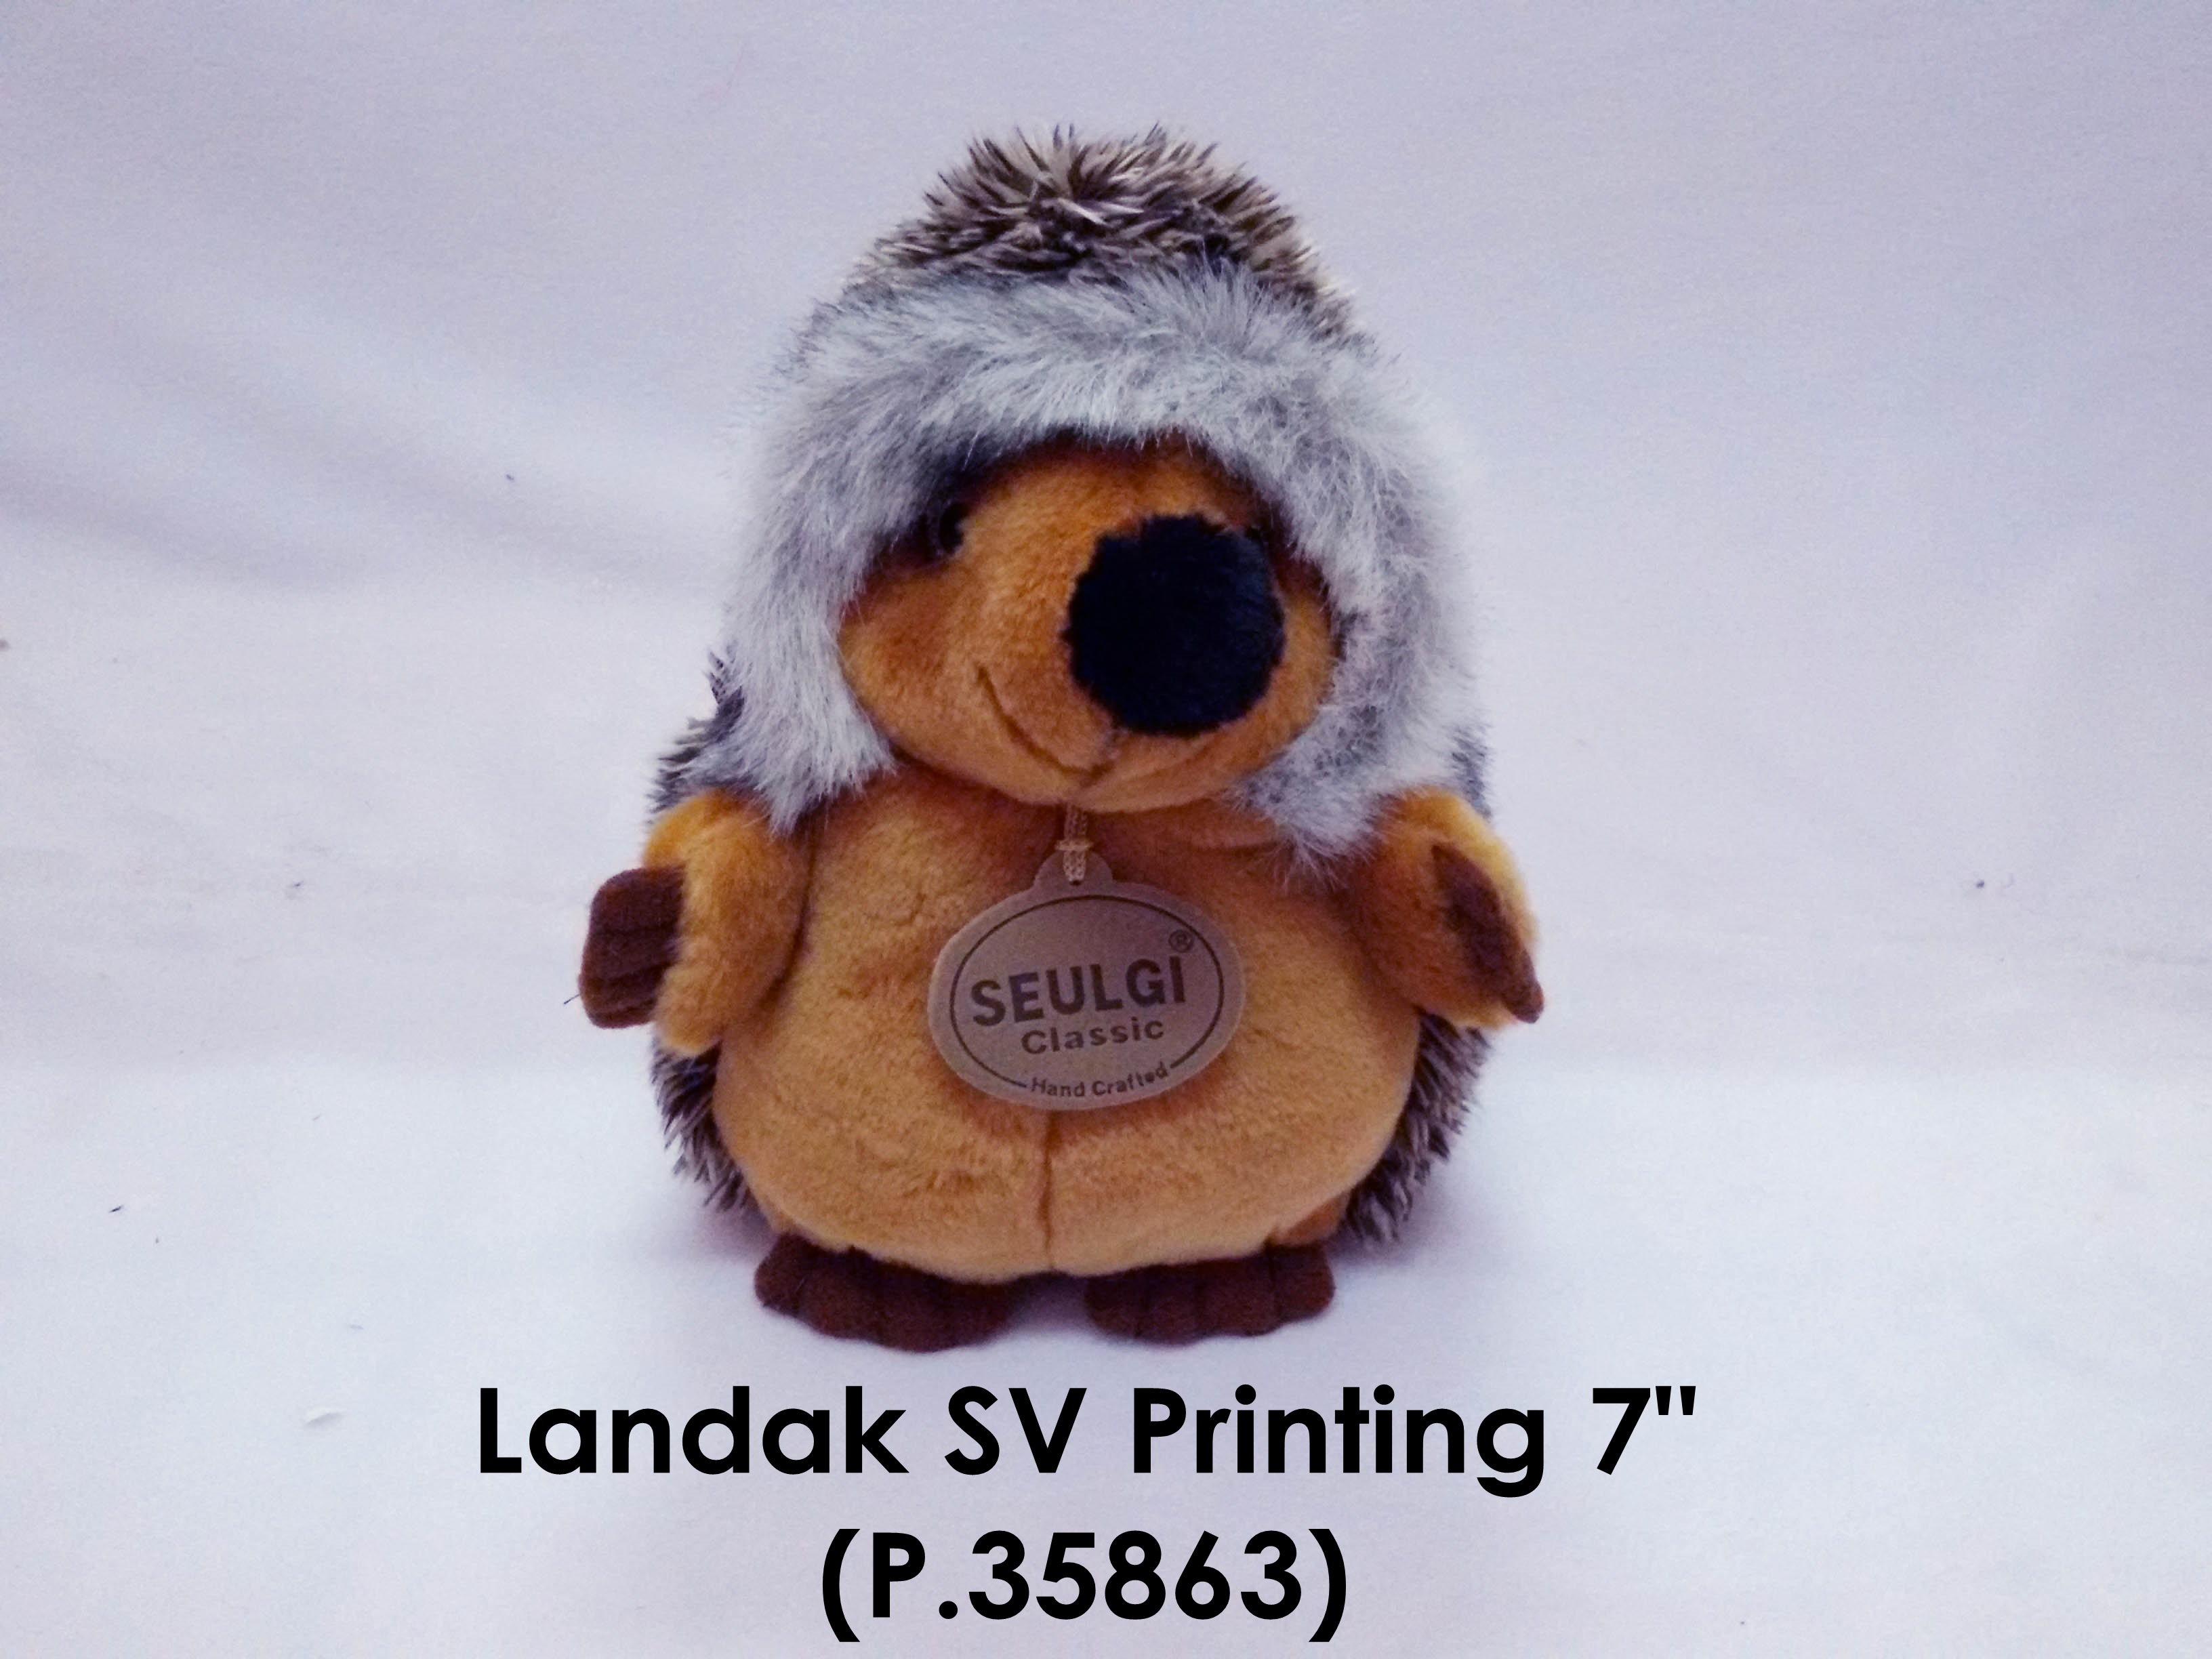 Landak SV Printing 7 in P.35863.jpg